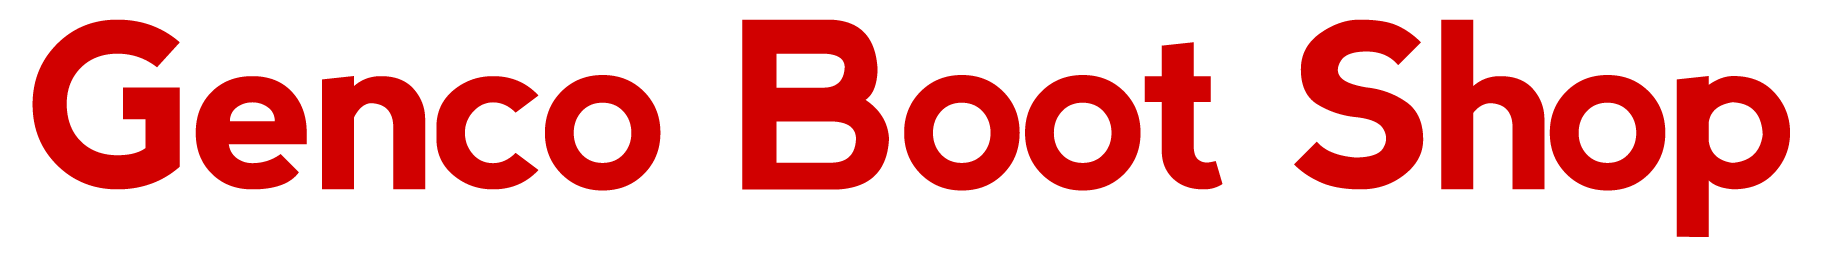 Genco Boot Shop - Logo